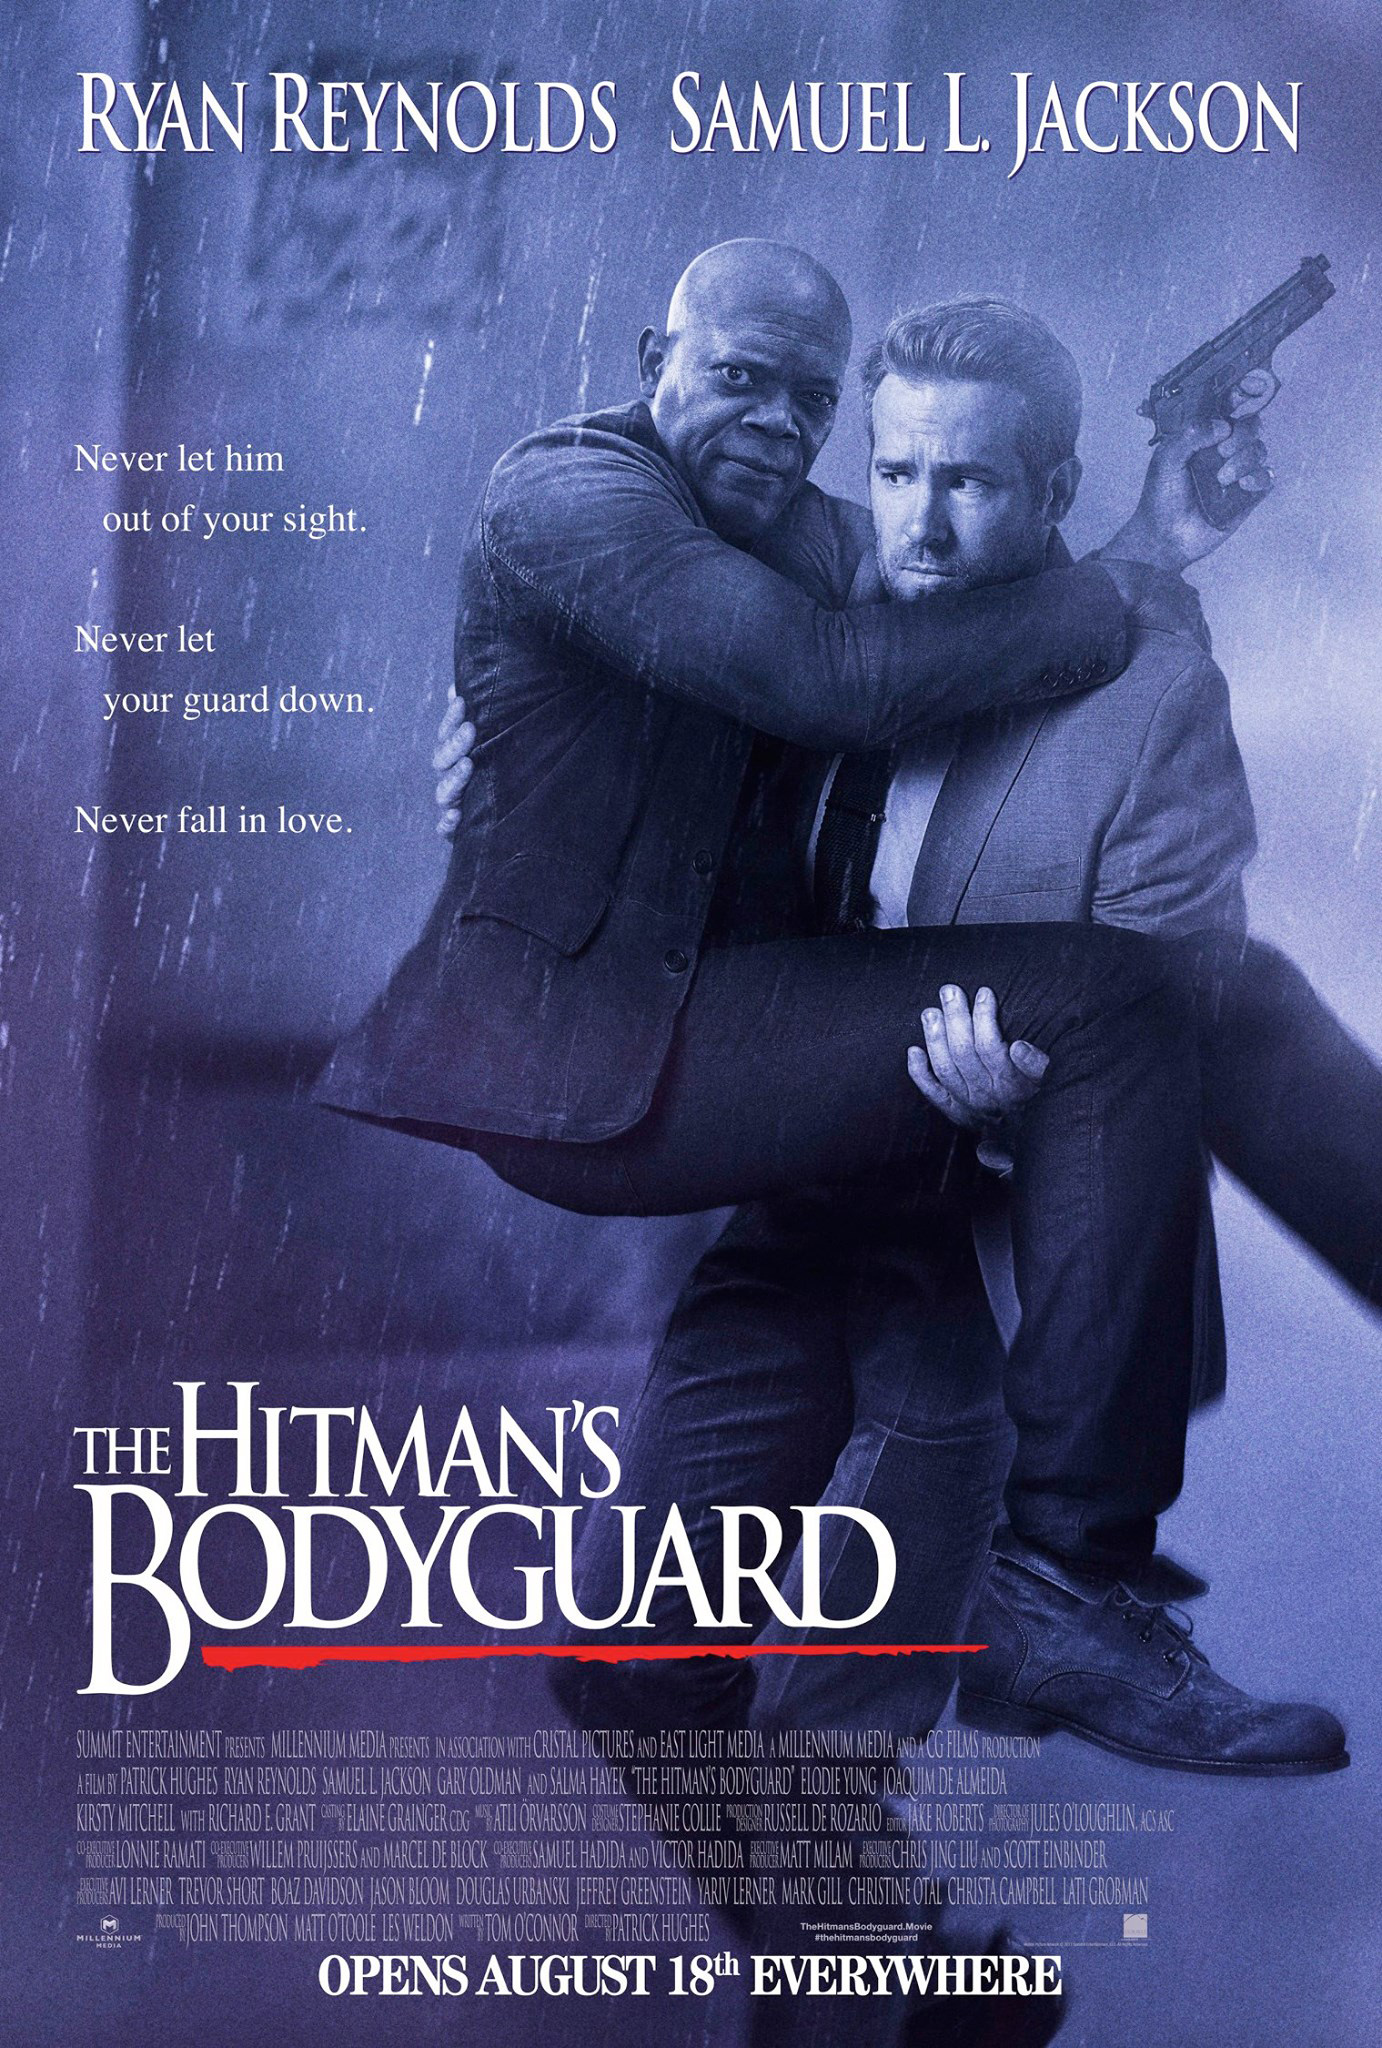 hitmans bodyguard poster The Hitman's Bodyguard Red-Band Trailer & Poster: Ryan Reynolds & Samuel L. Jackson